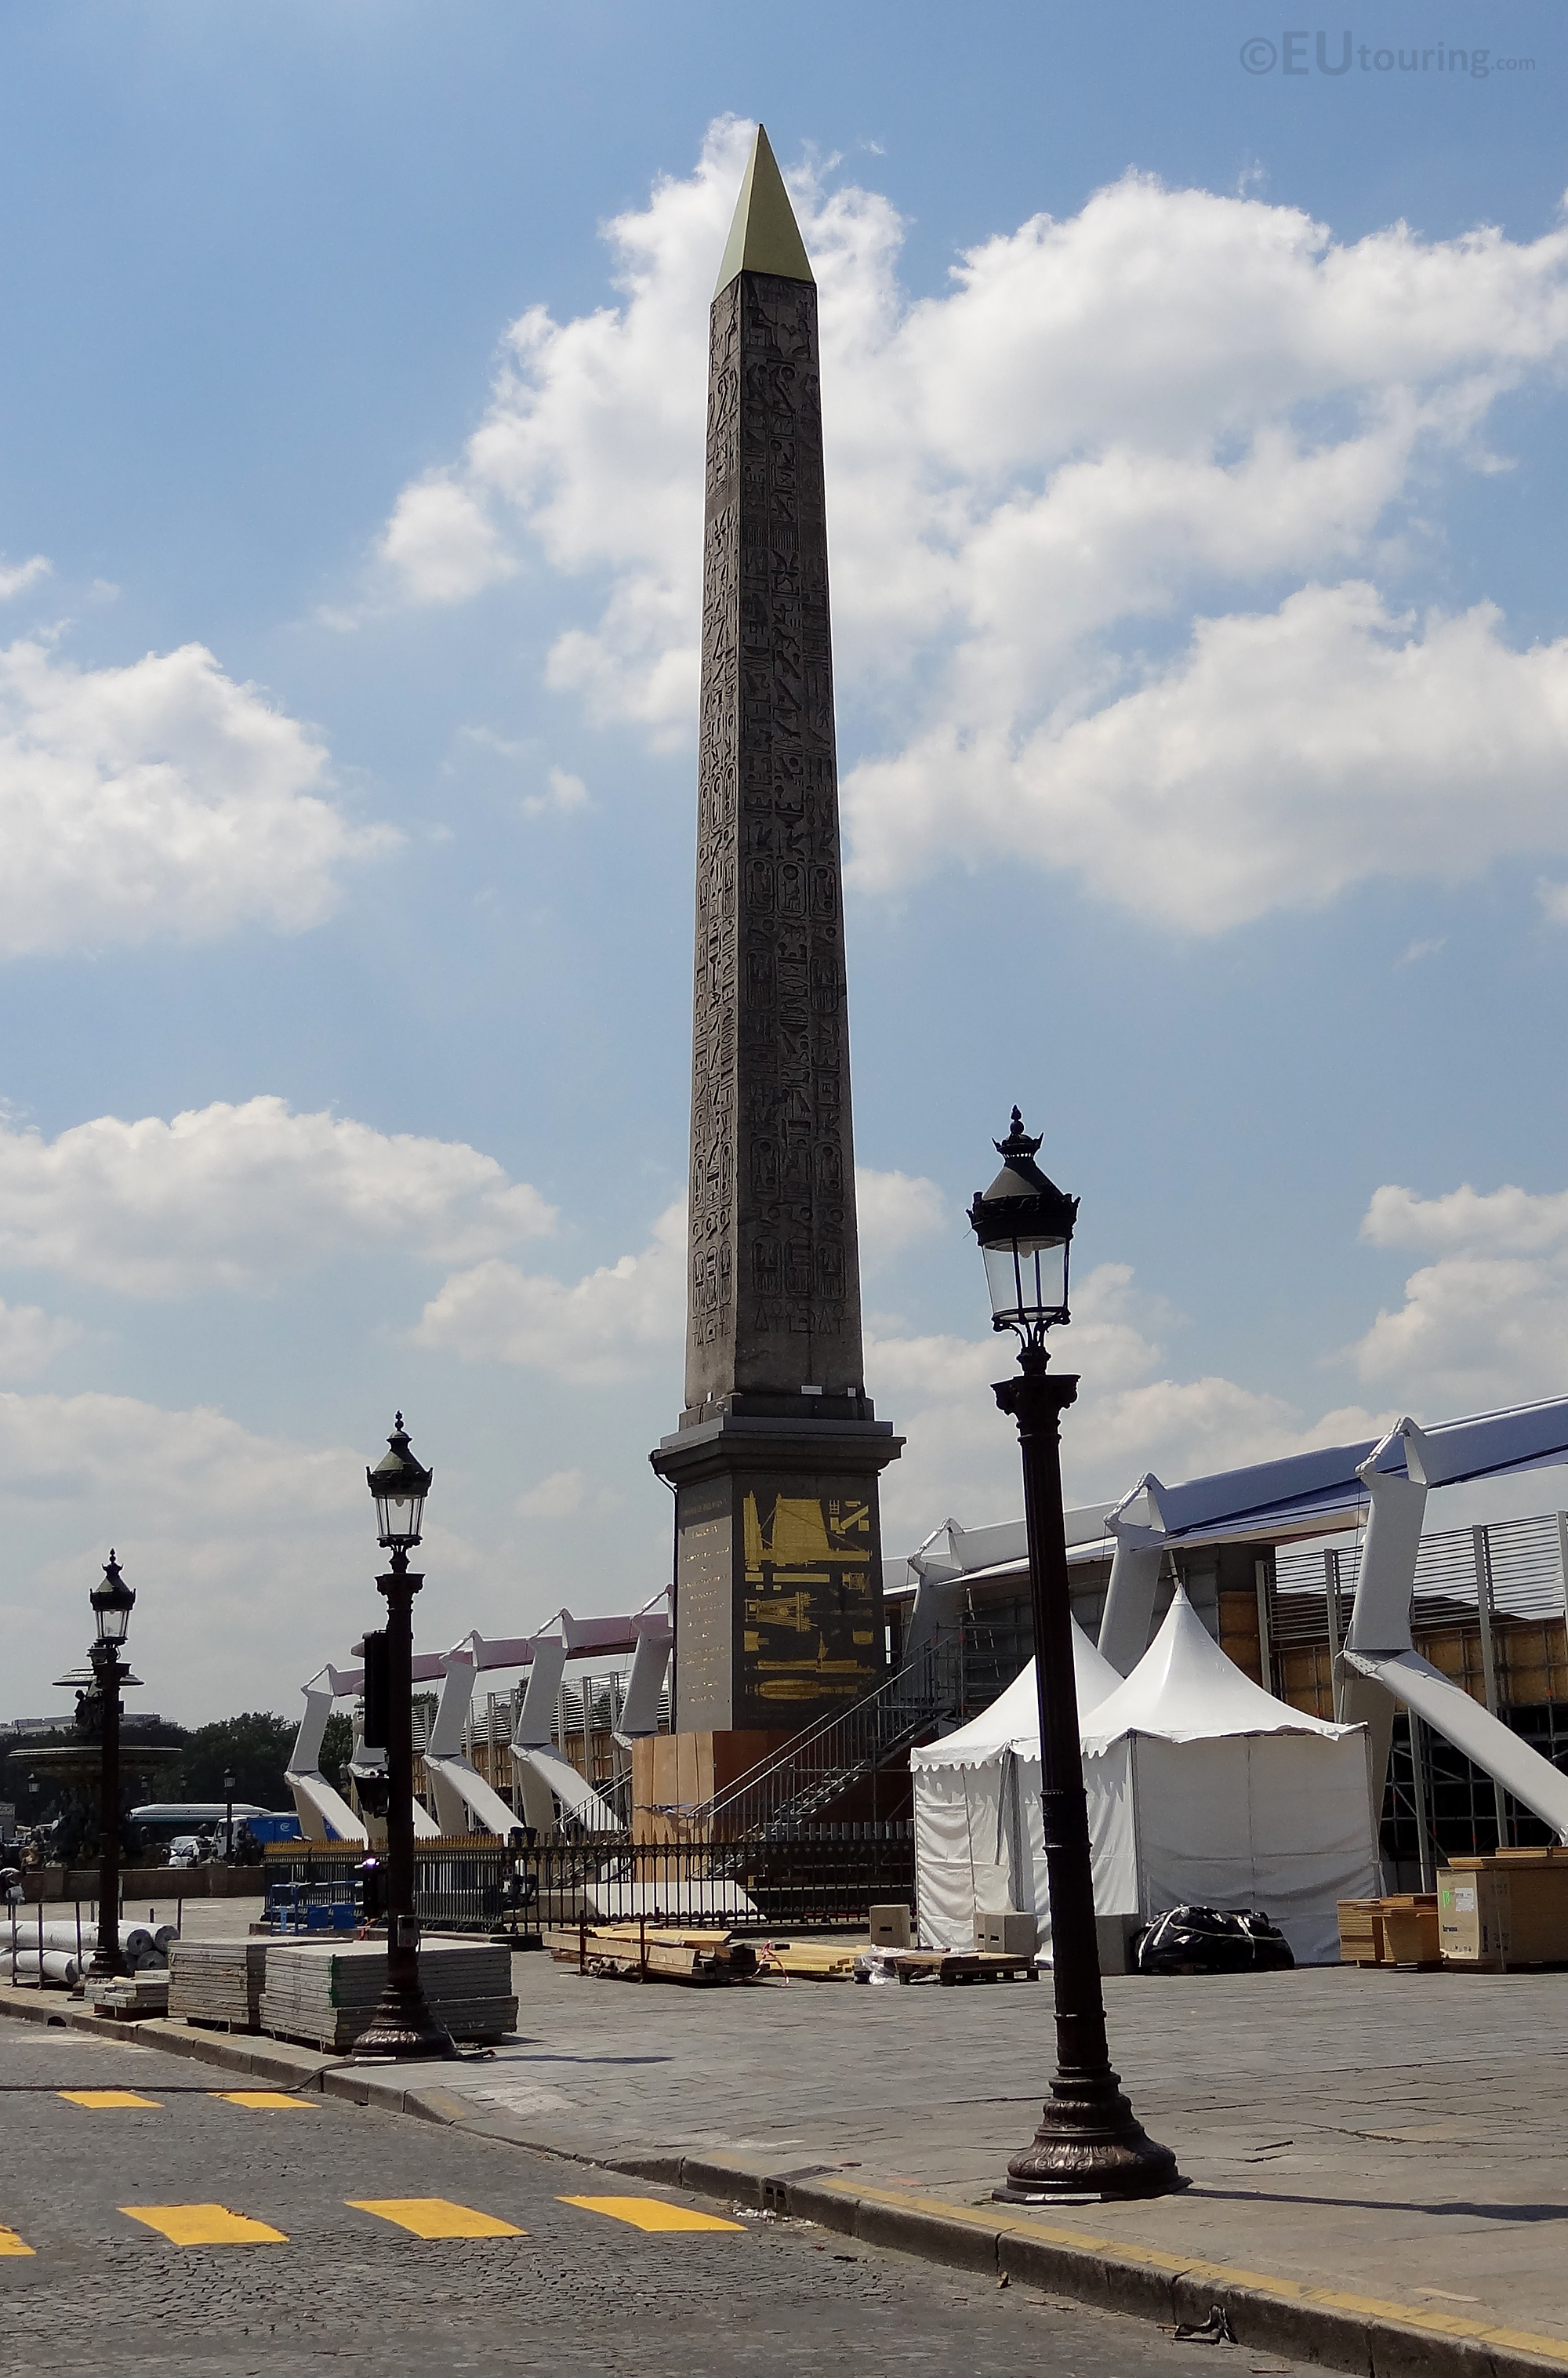 Oldest monument in Paris